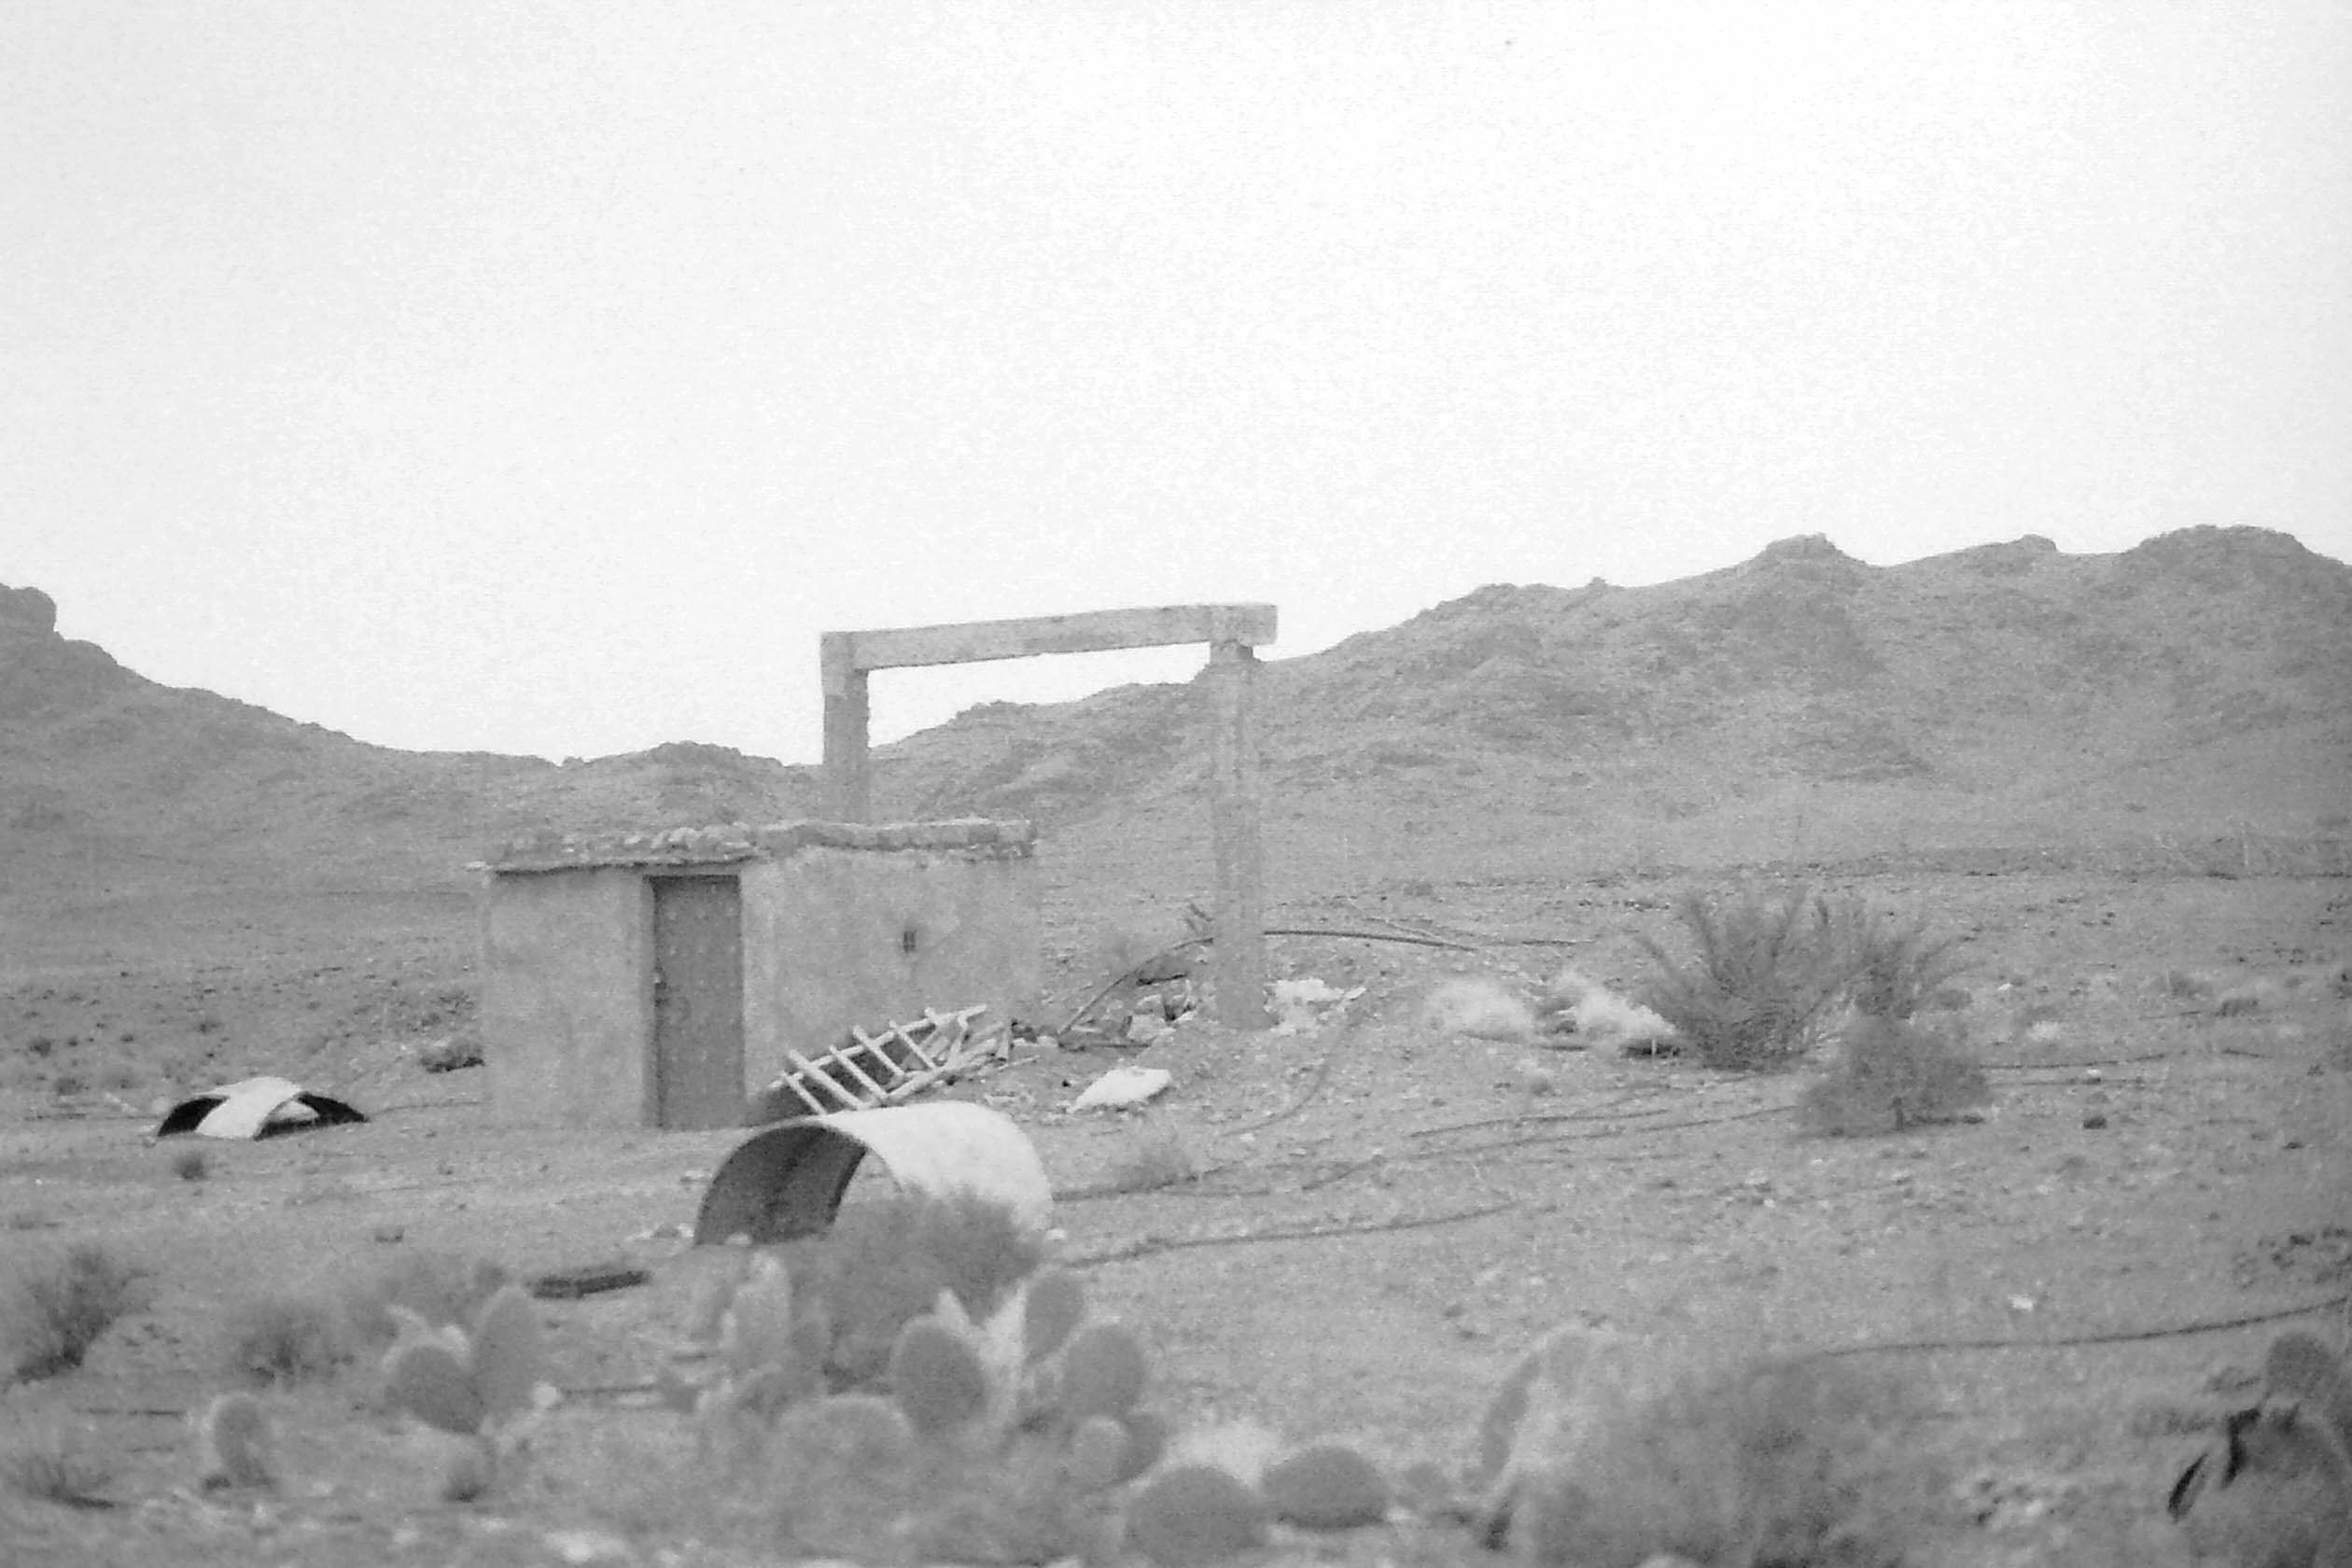 cabane abandonnée entourée de cactus devant les montagnes du désert en noir et blanc